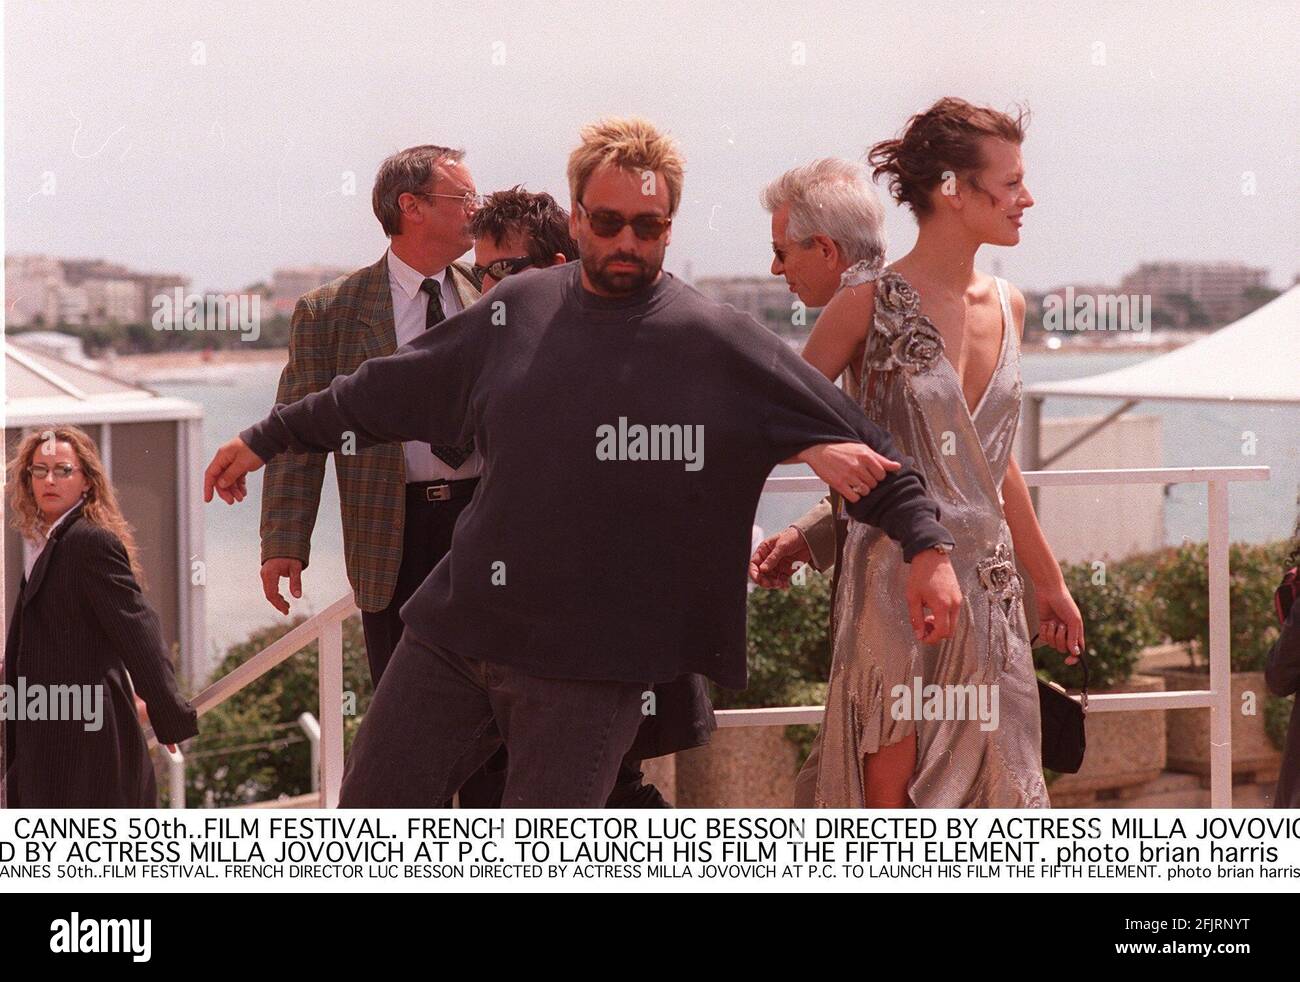 Luc Besson director de la película Fifth Element en la Festival de Cannes con la actriz Milla Jovovovich en conferencia de prensa para lanzar su película Foto de stock